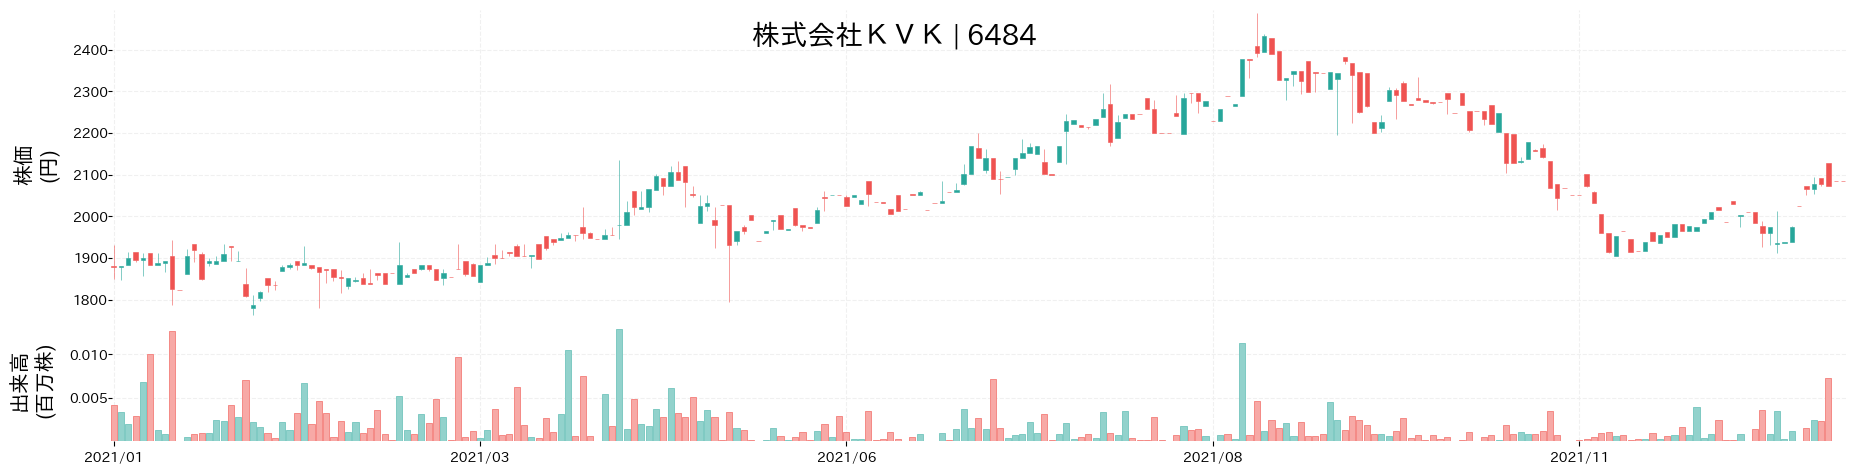 KVKの株価推移(2021)